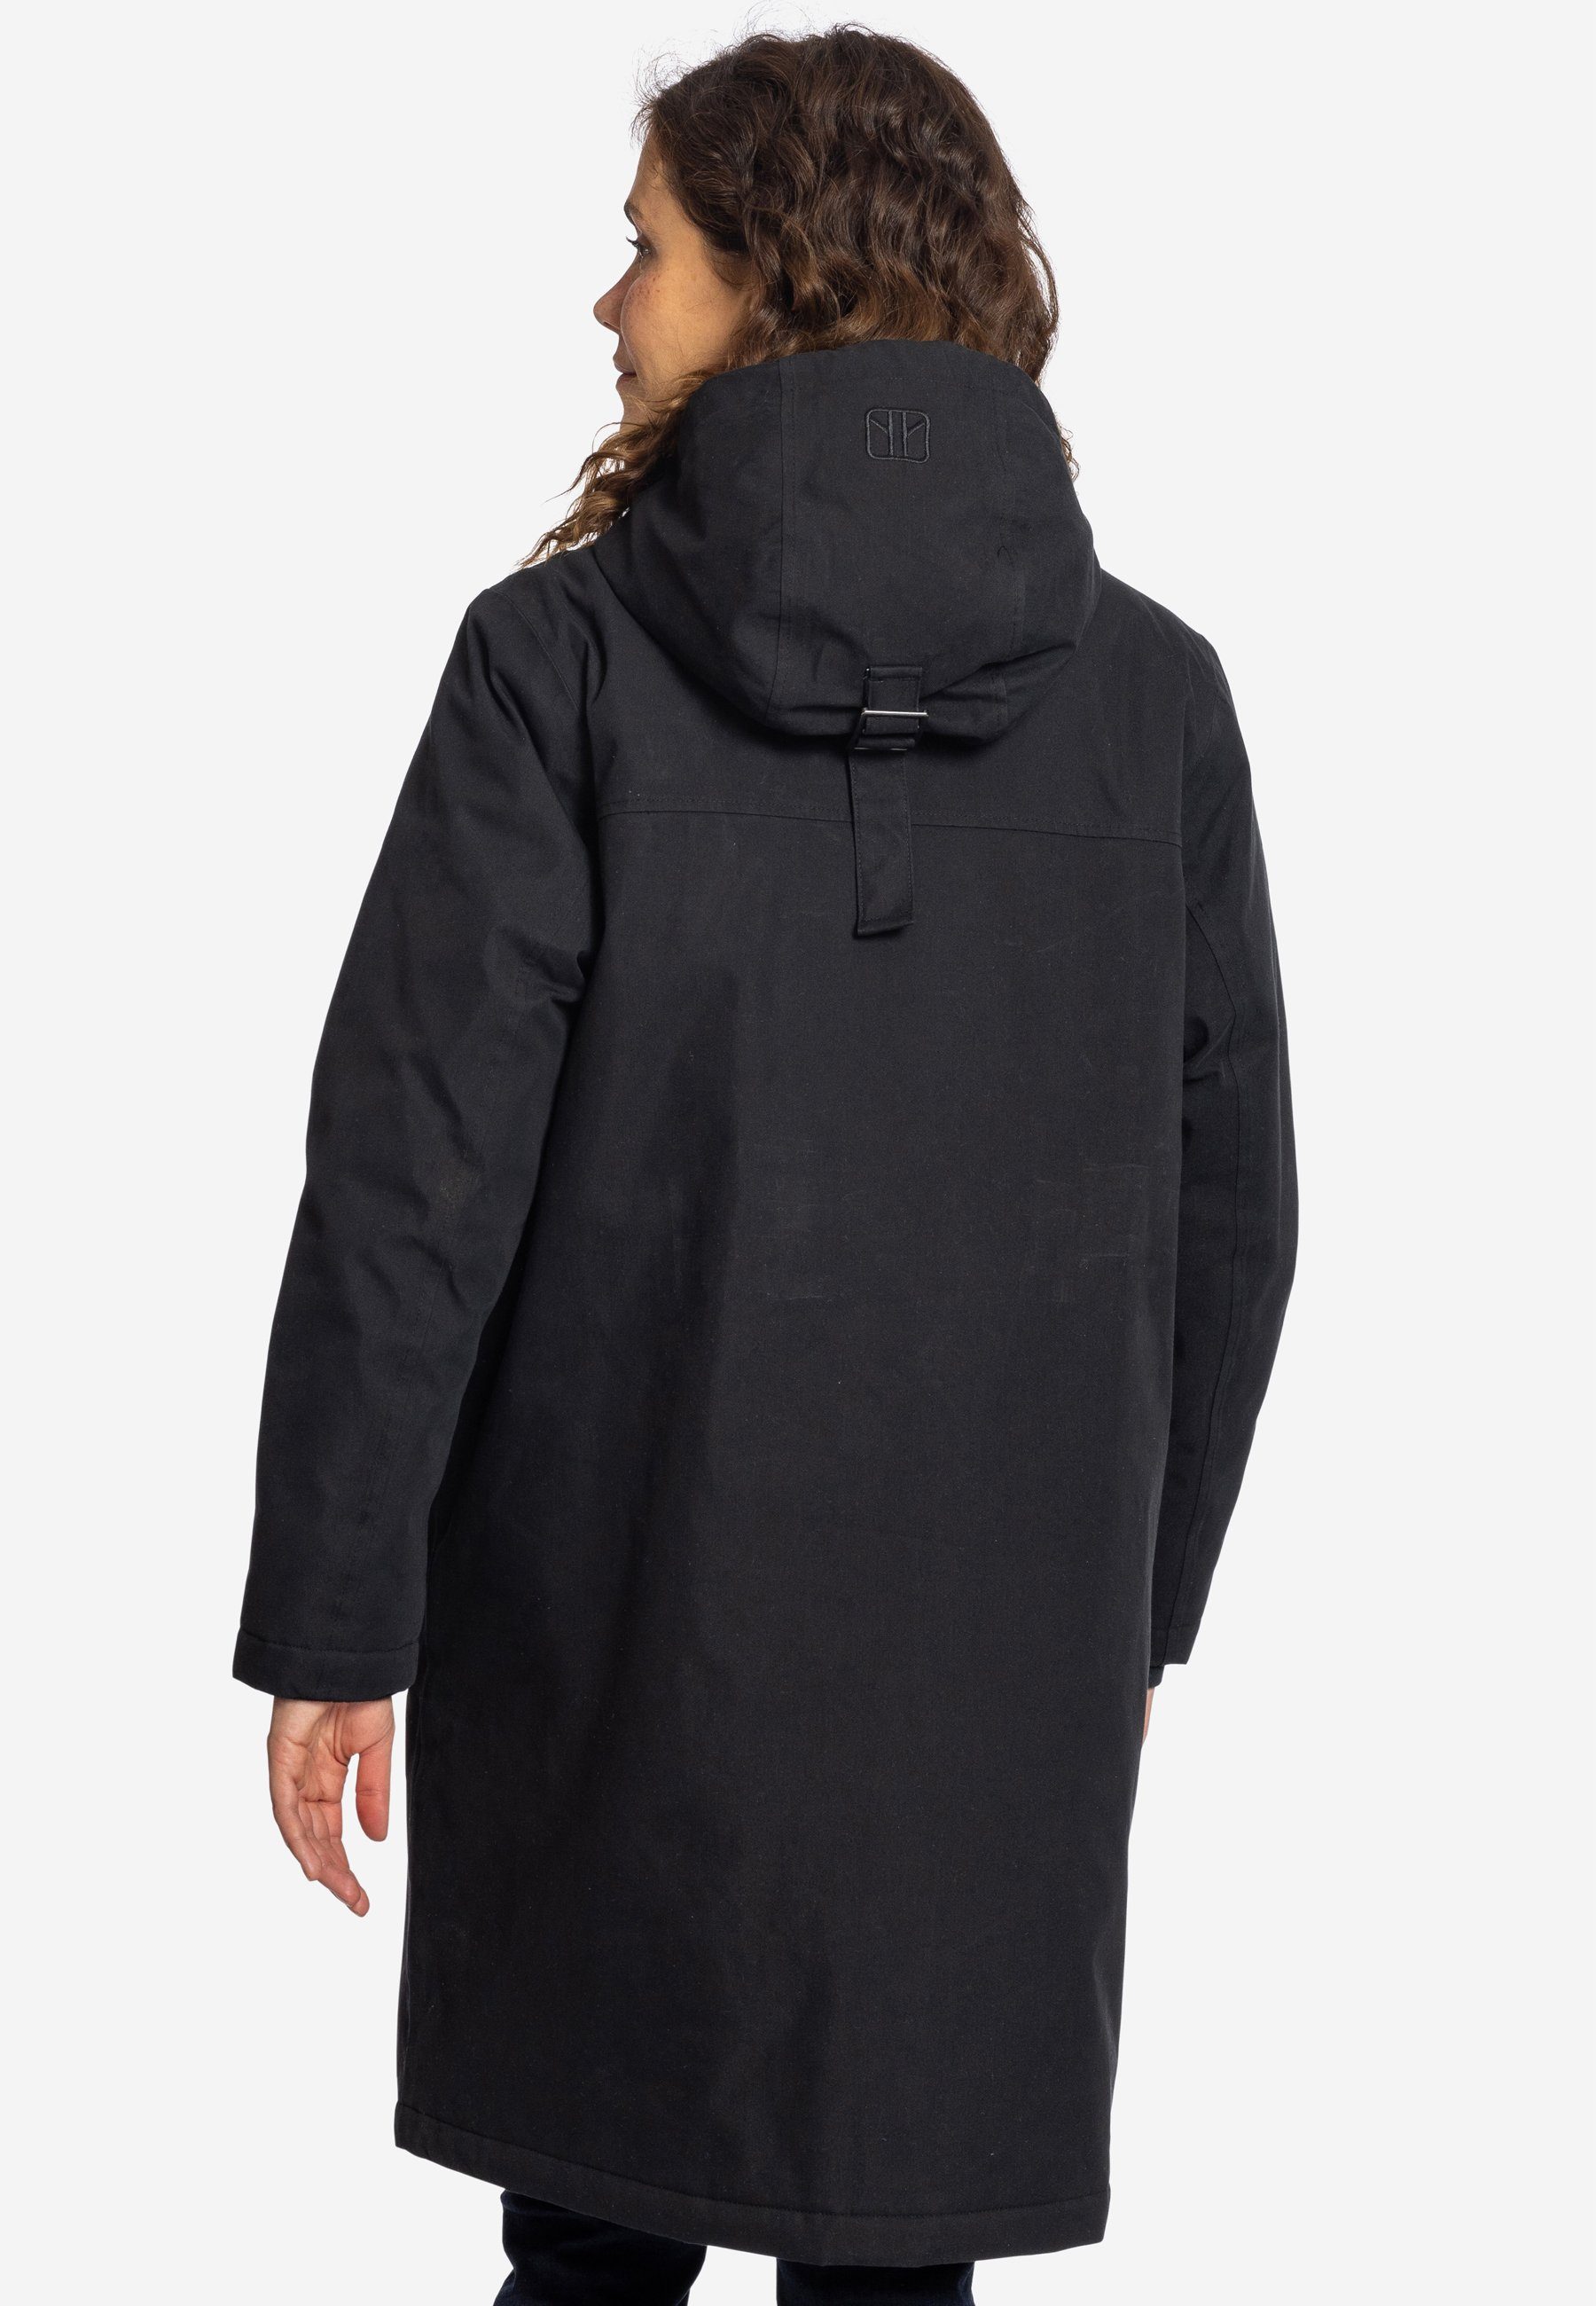 Winterjacke viele wasserdicht warm Oversized, Elkline black Taschen Hardcover